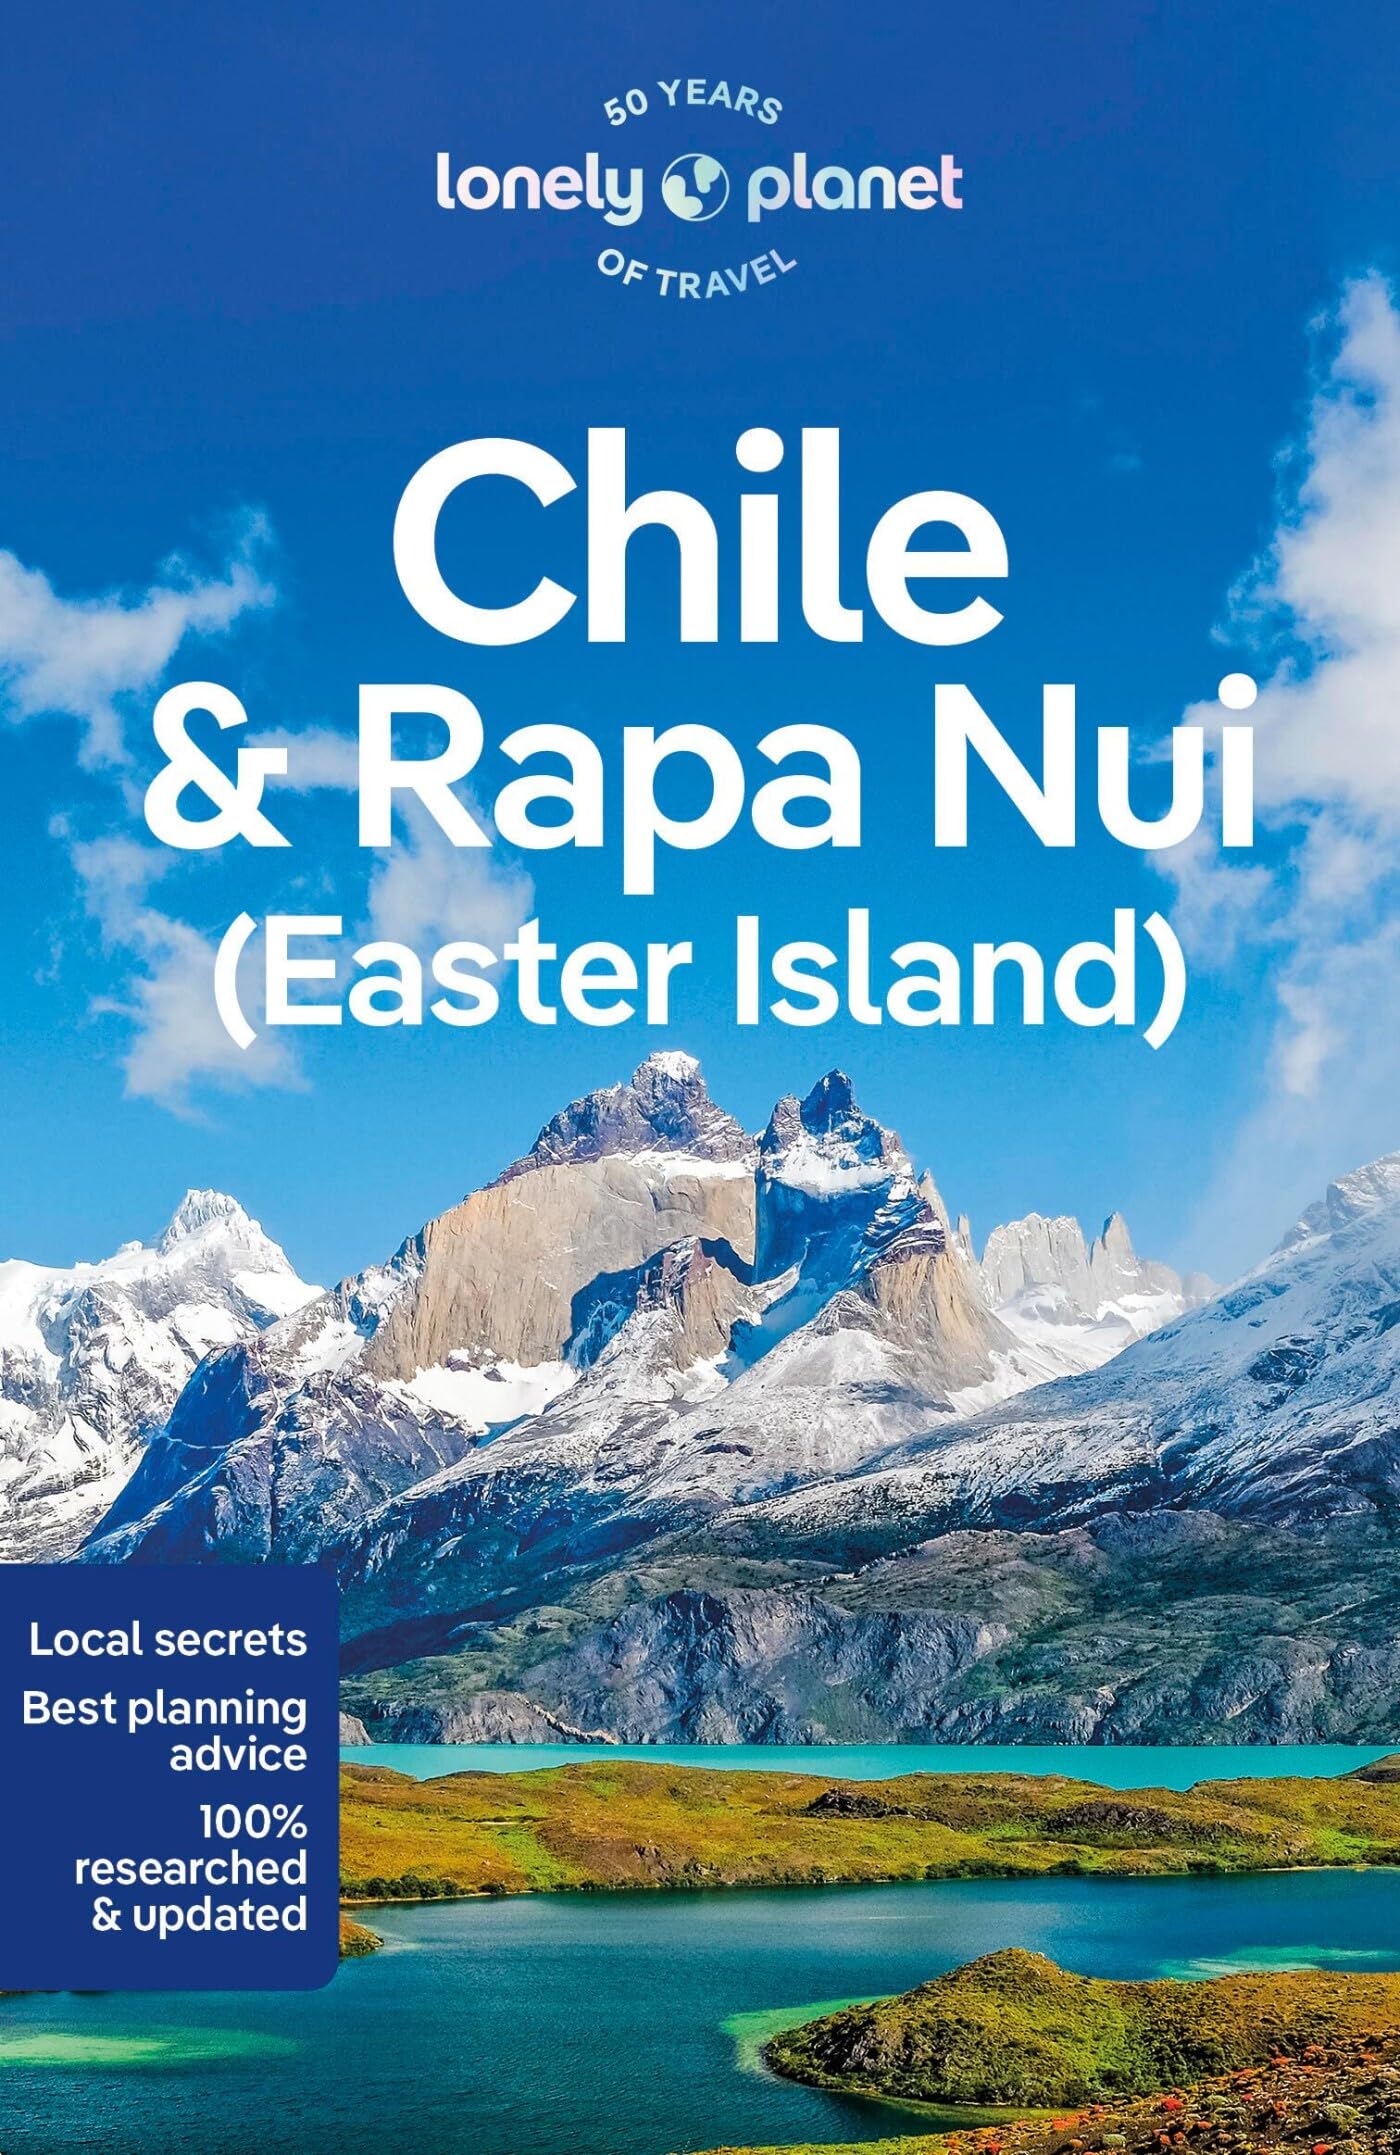 מדריך צ'ילה ואי הפסחא לונלי פלנט 12